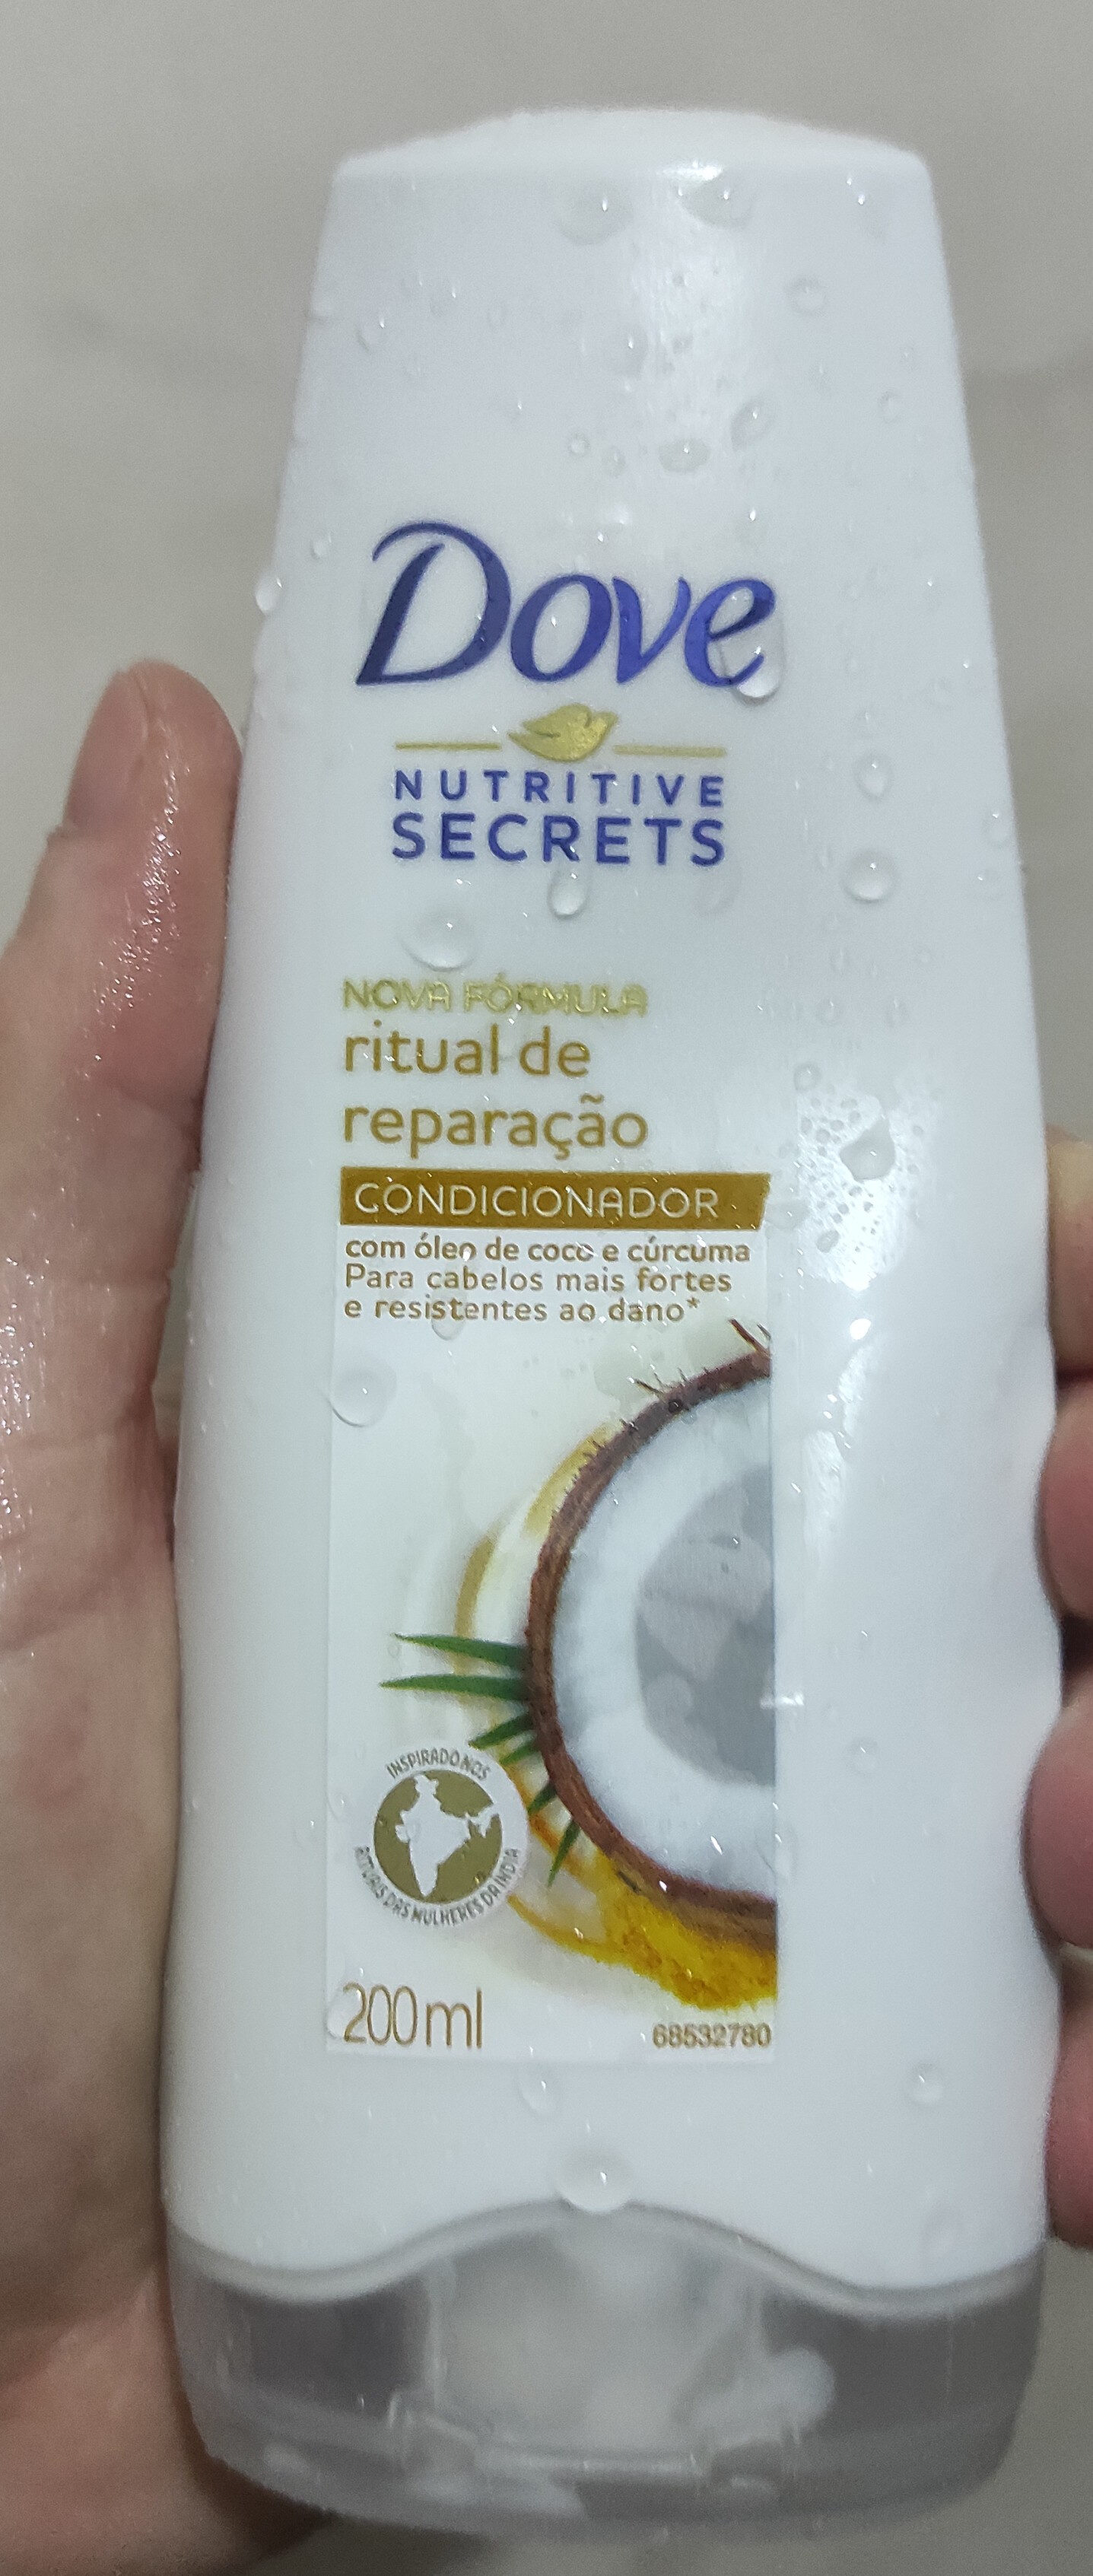 Shampoo Dove Ritual de Reparação - Product - pt